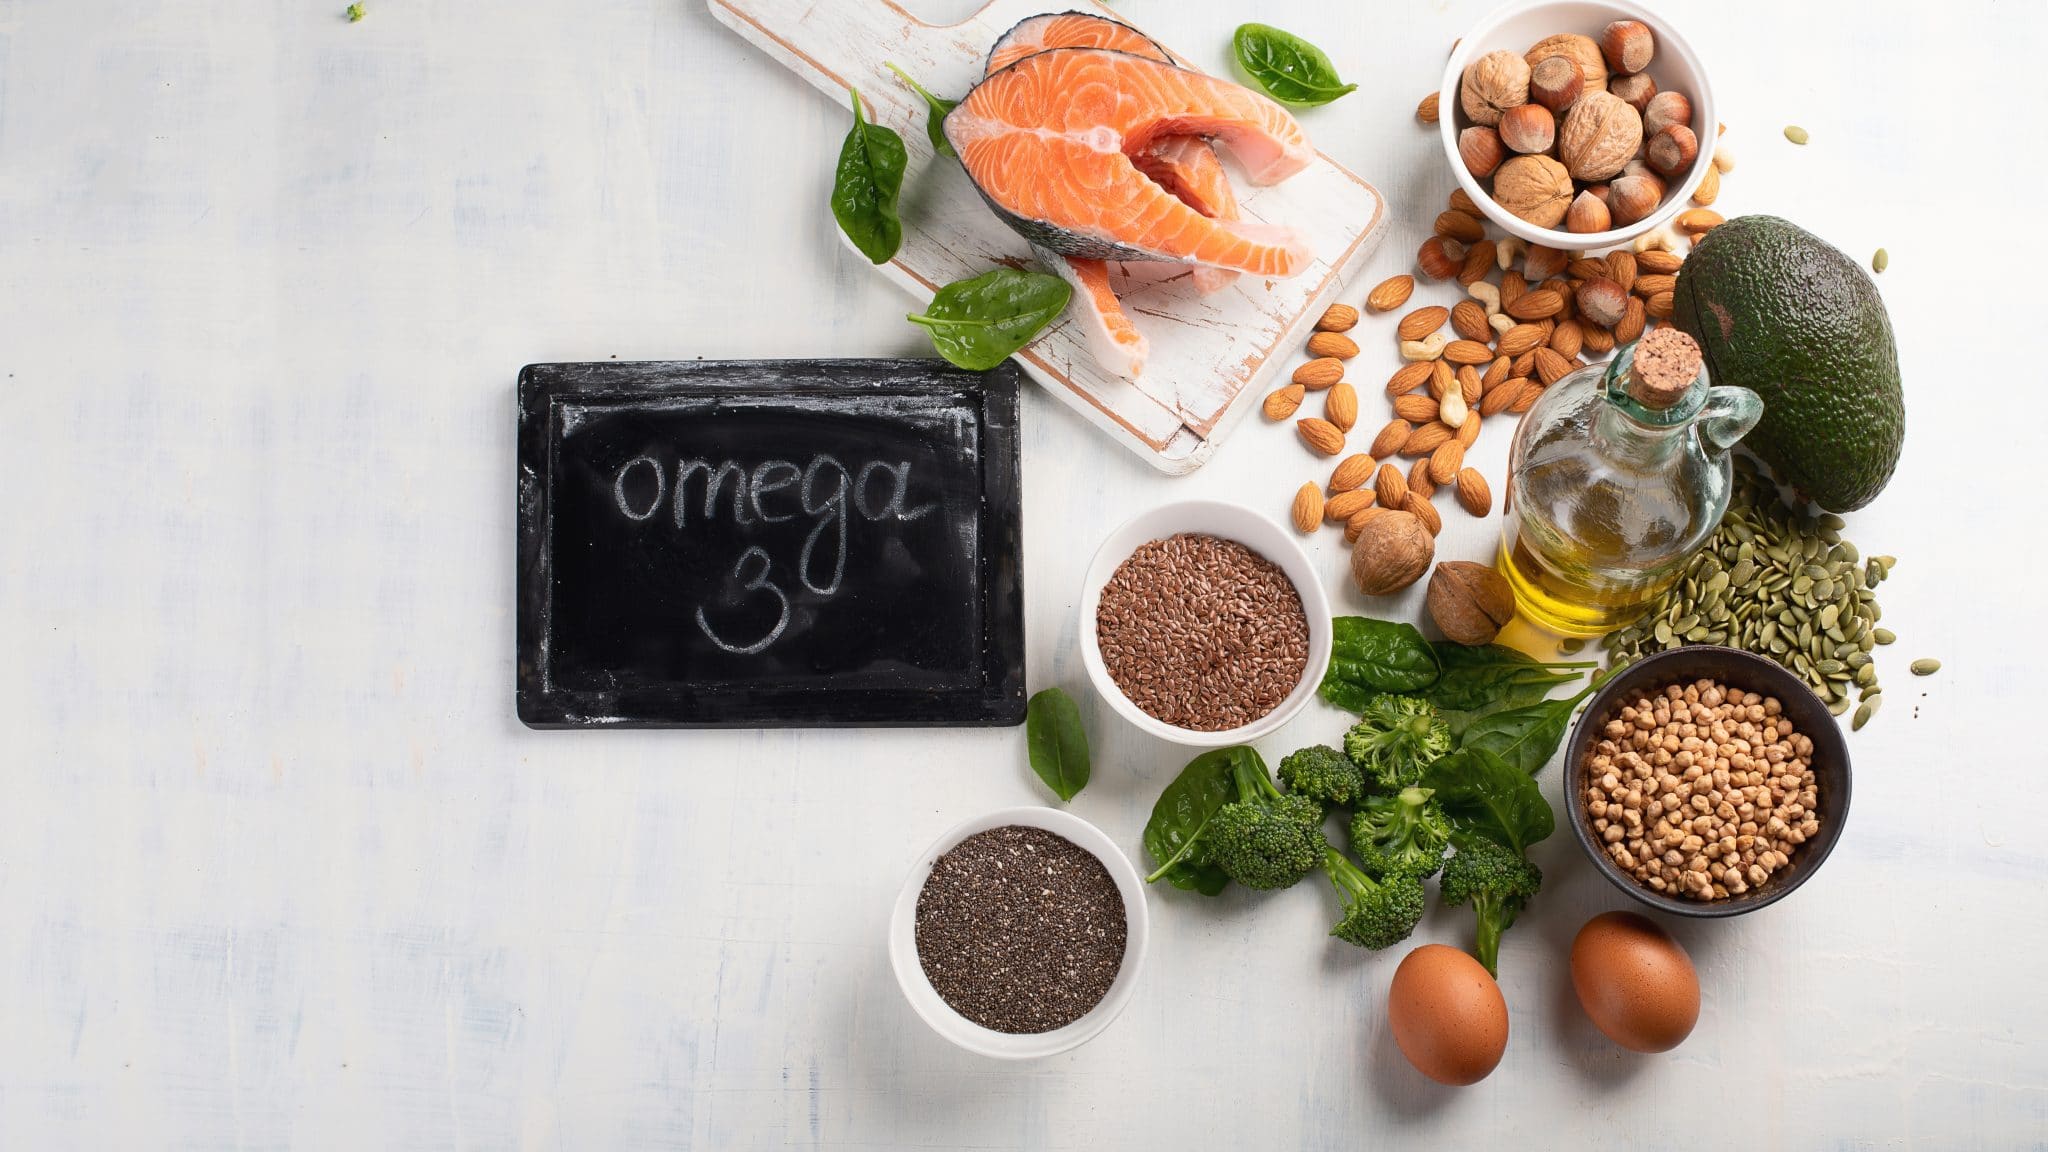 Assortiment d'aliments riches en oméga-3, notamment du poisson, des noix, des graines, des œufs et des huiles, affichés sur une surface claire avec un panneau indiquant « oméga 3 ».